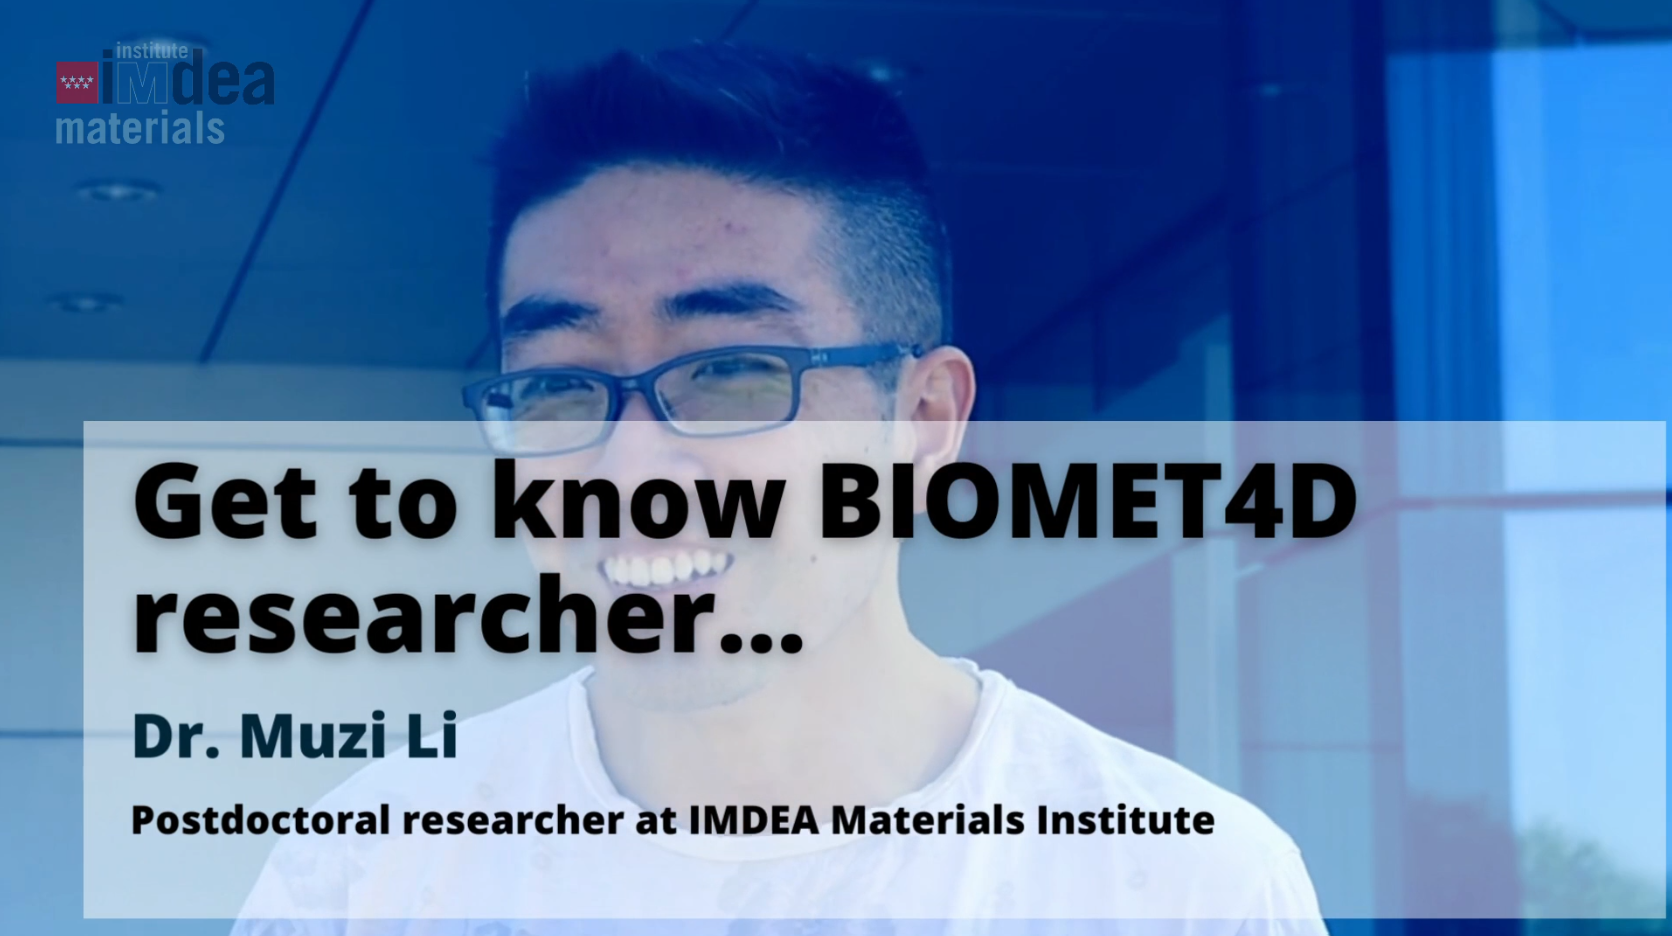 Get to know BIOMET4D researcher Dr. Muzi Li